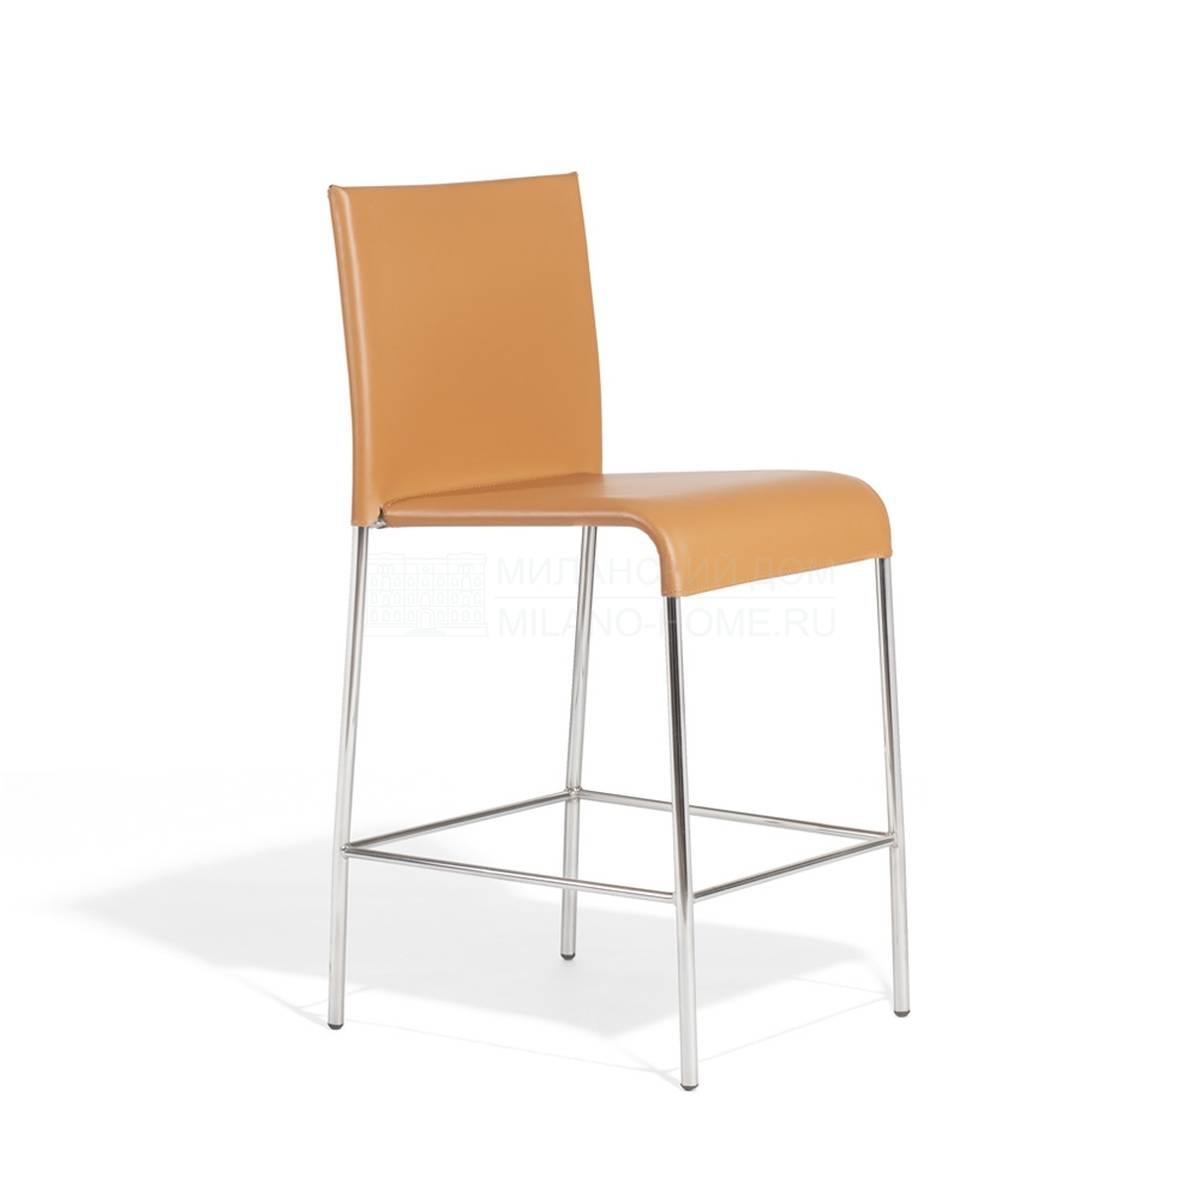 Полубарный стул Agra/688/SC из Италии фабрики POTOCCO